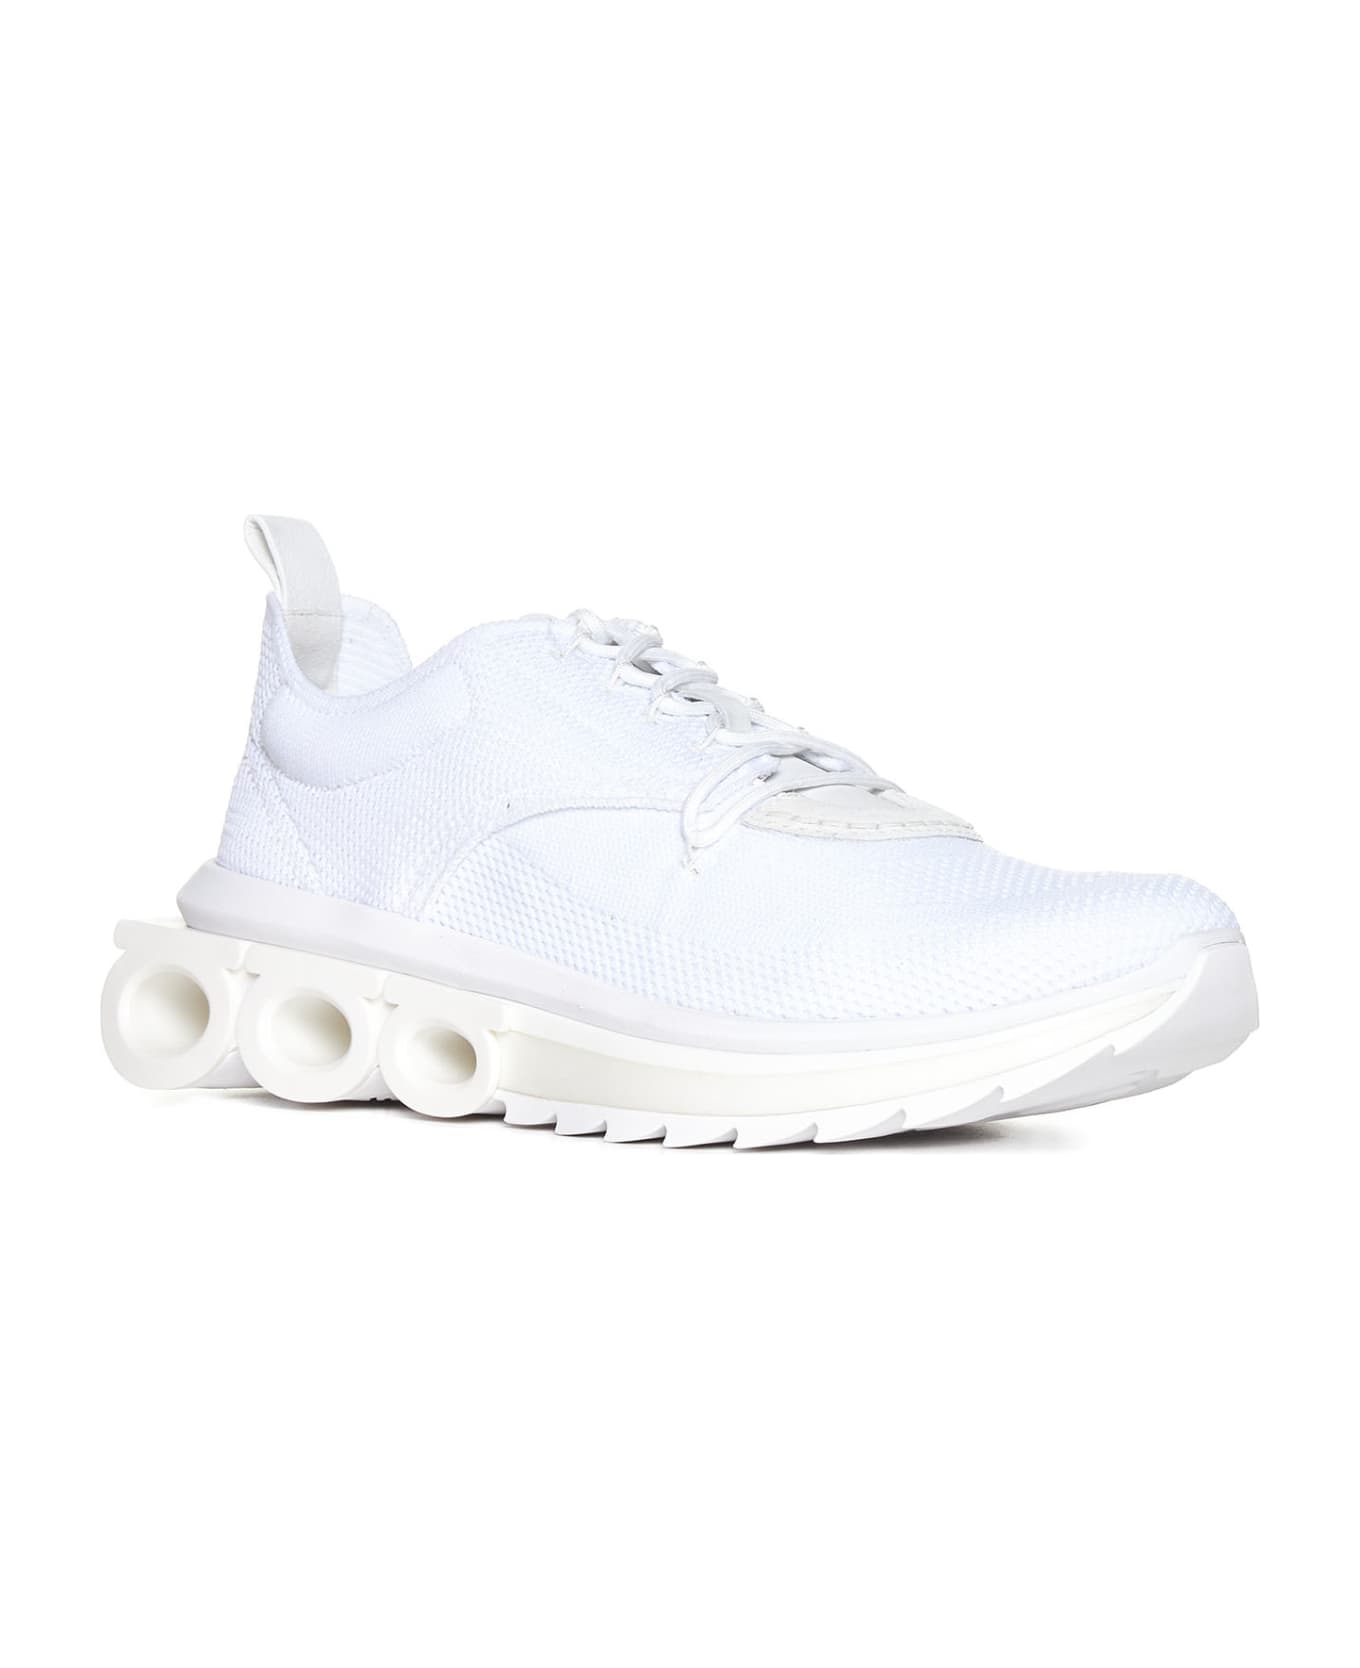 Ferragamo Sneakers - Bianco ottico